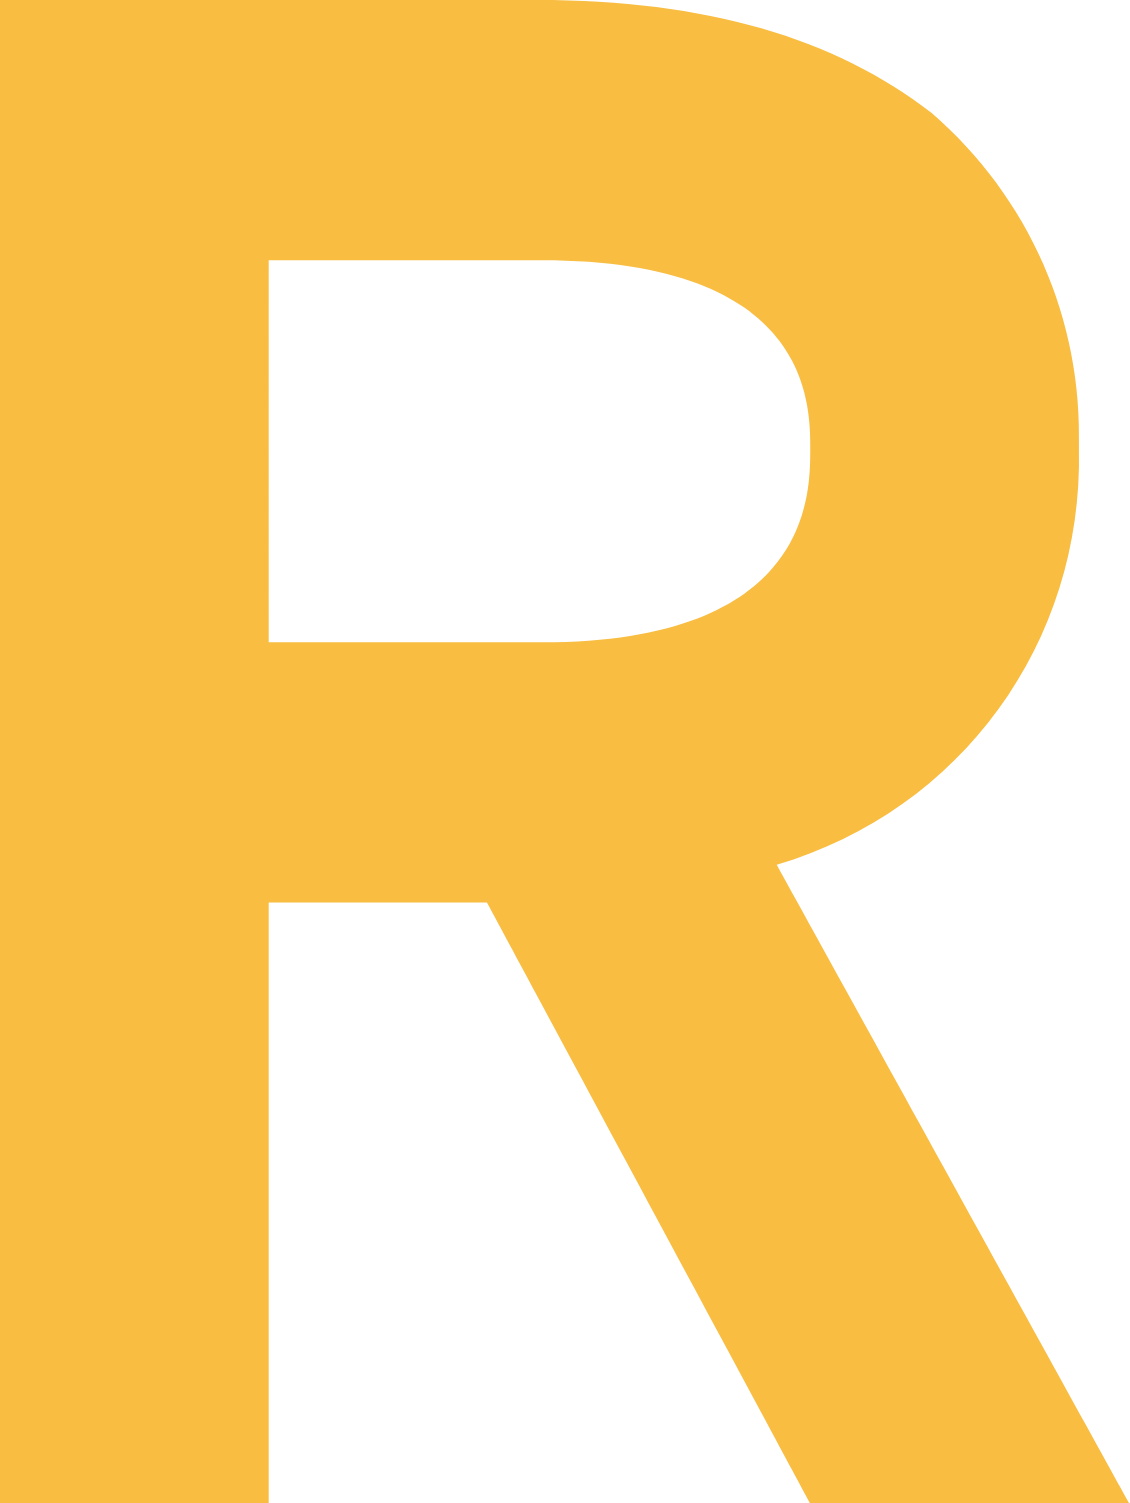 Reach plc logo (transparent PNG)